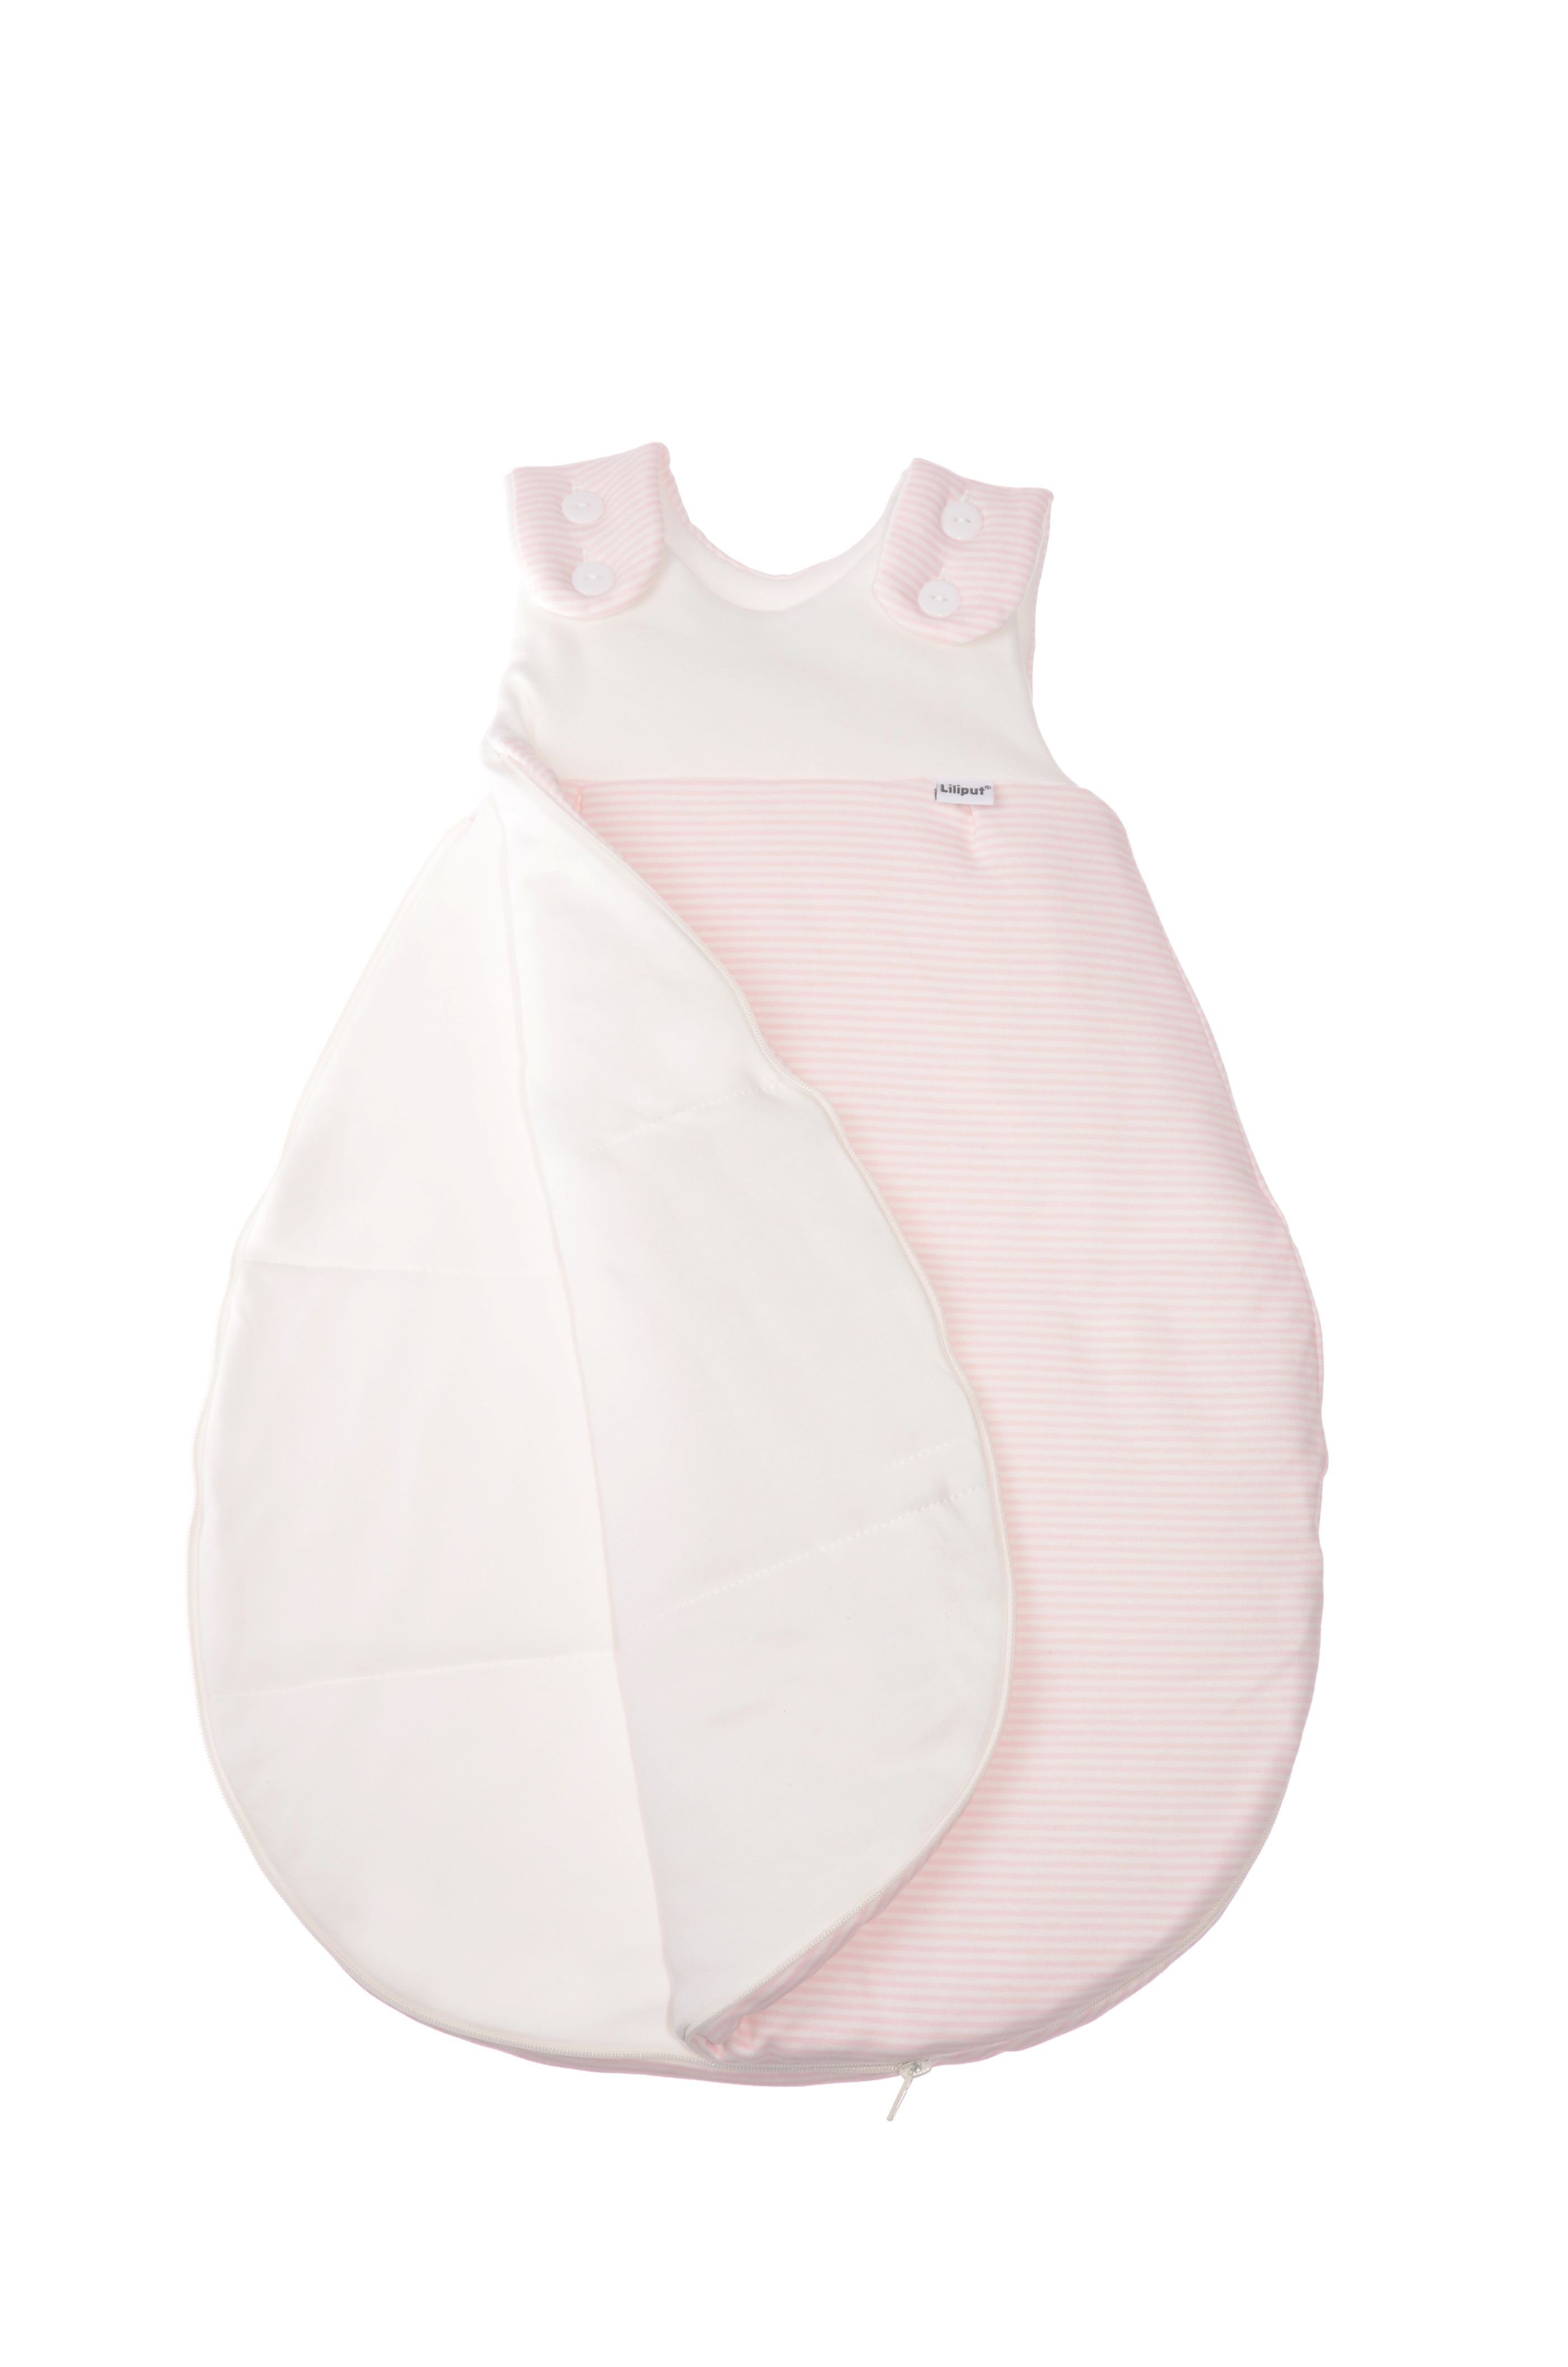 Babyschlafsack, verspielten Liliput im Streifendesign